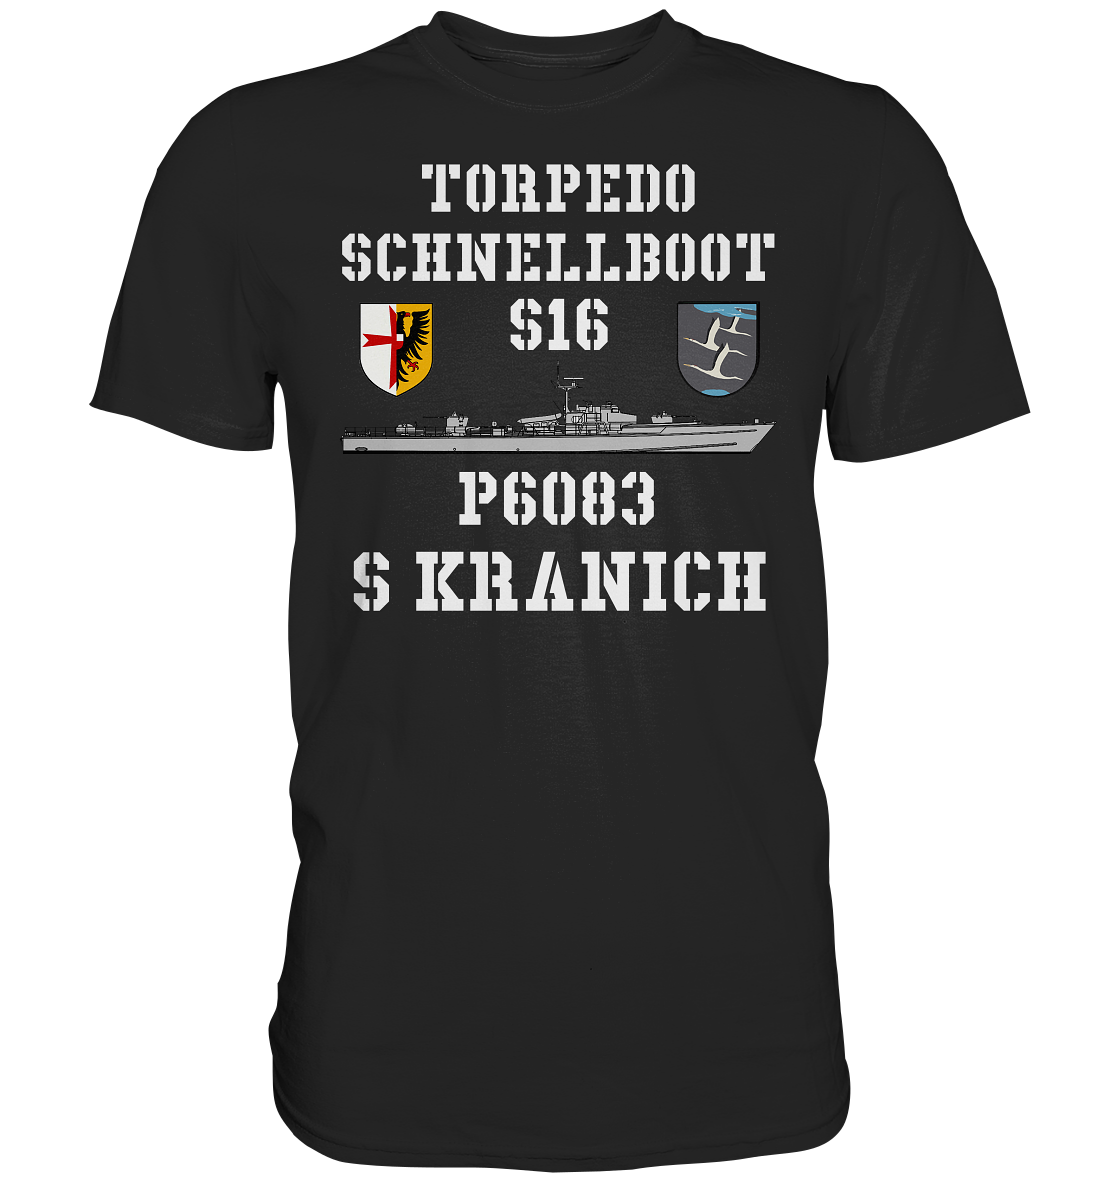 Torpedo-Schnellboot P6083 S16 KRANICH - Premium Shirt